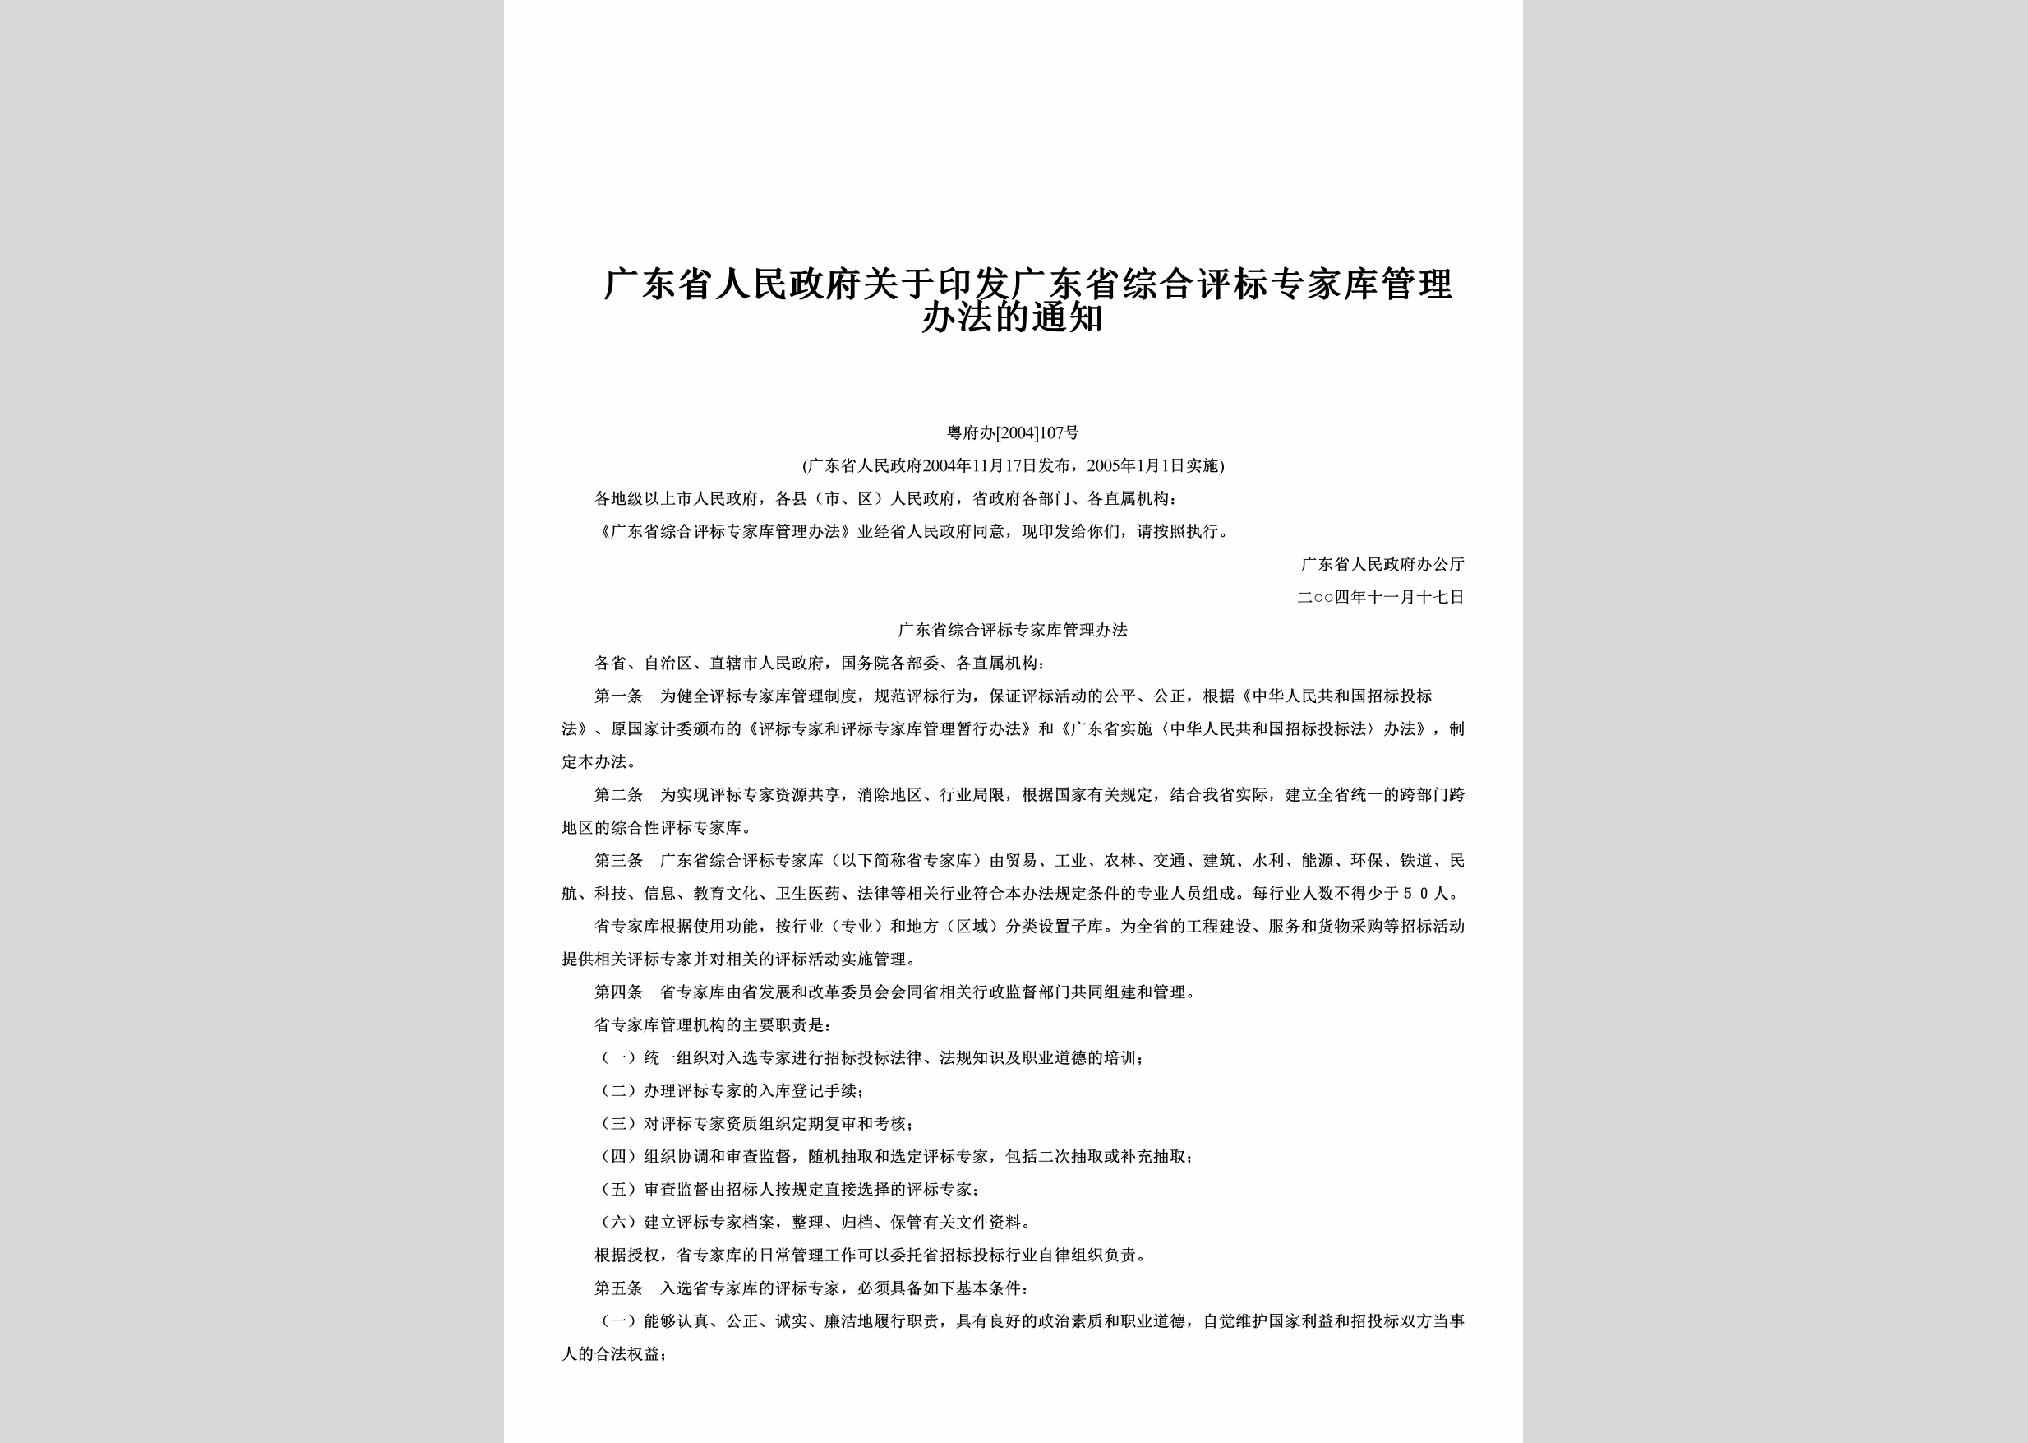 粤府办[2004]107号：关于印发广东省综合评标专家库管理办法的通知